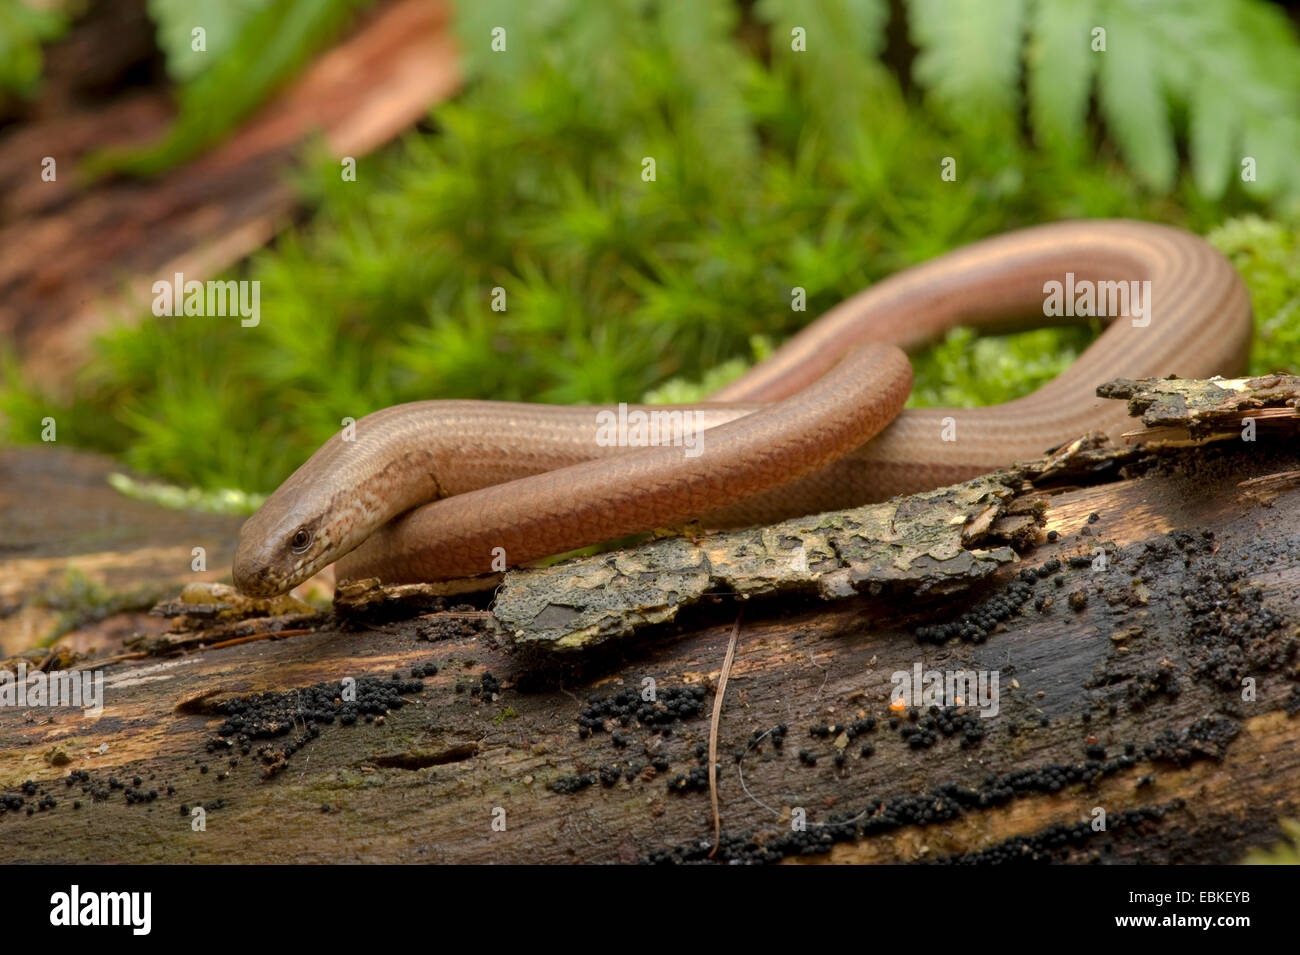 Ver lent européenne, blindworm, slow worm (Anguis fragilis), l'enroulement sur le bois mort, Allemagne Banque D'Images